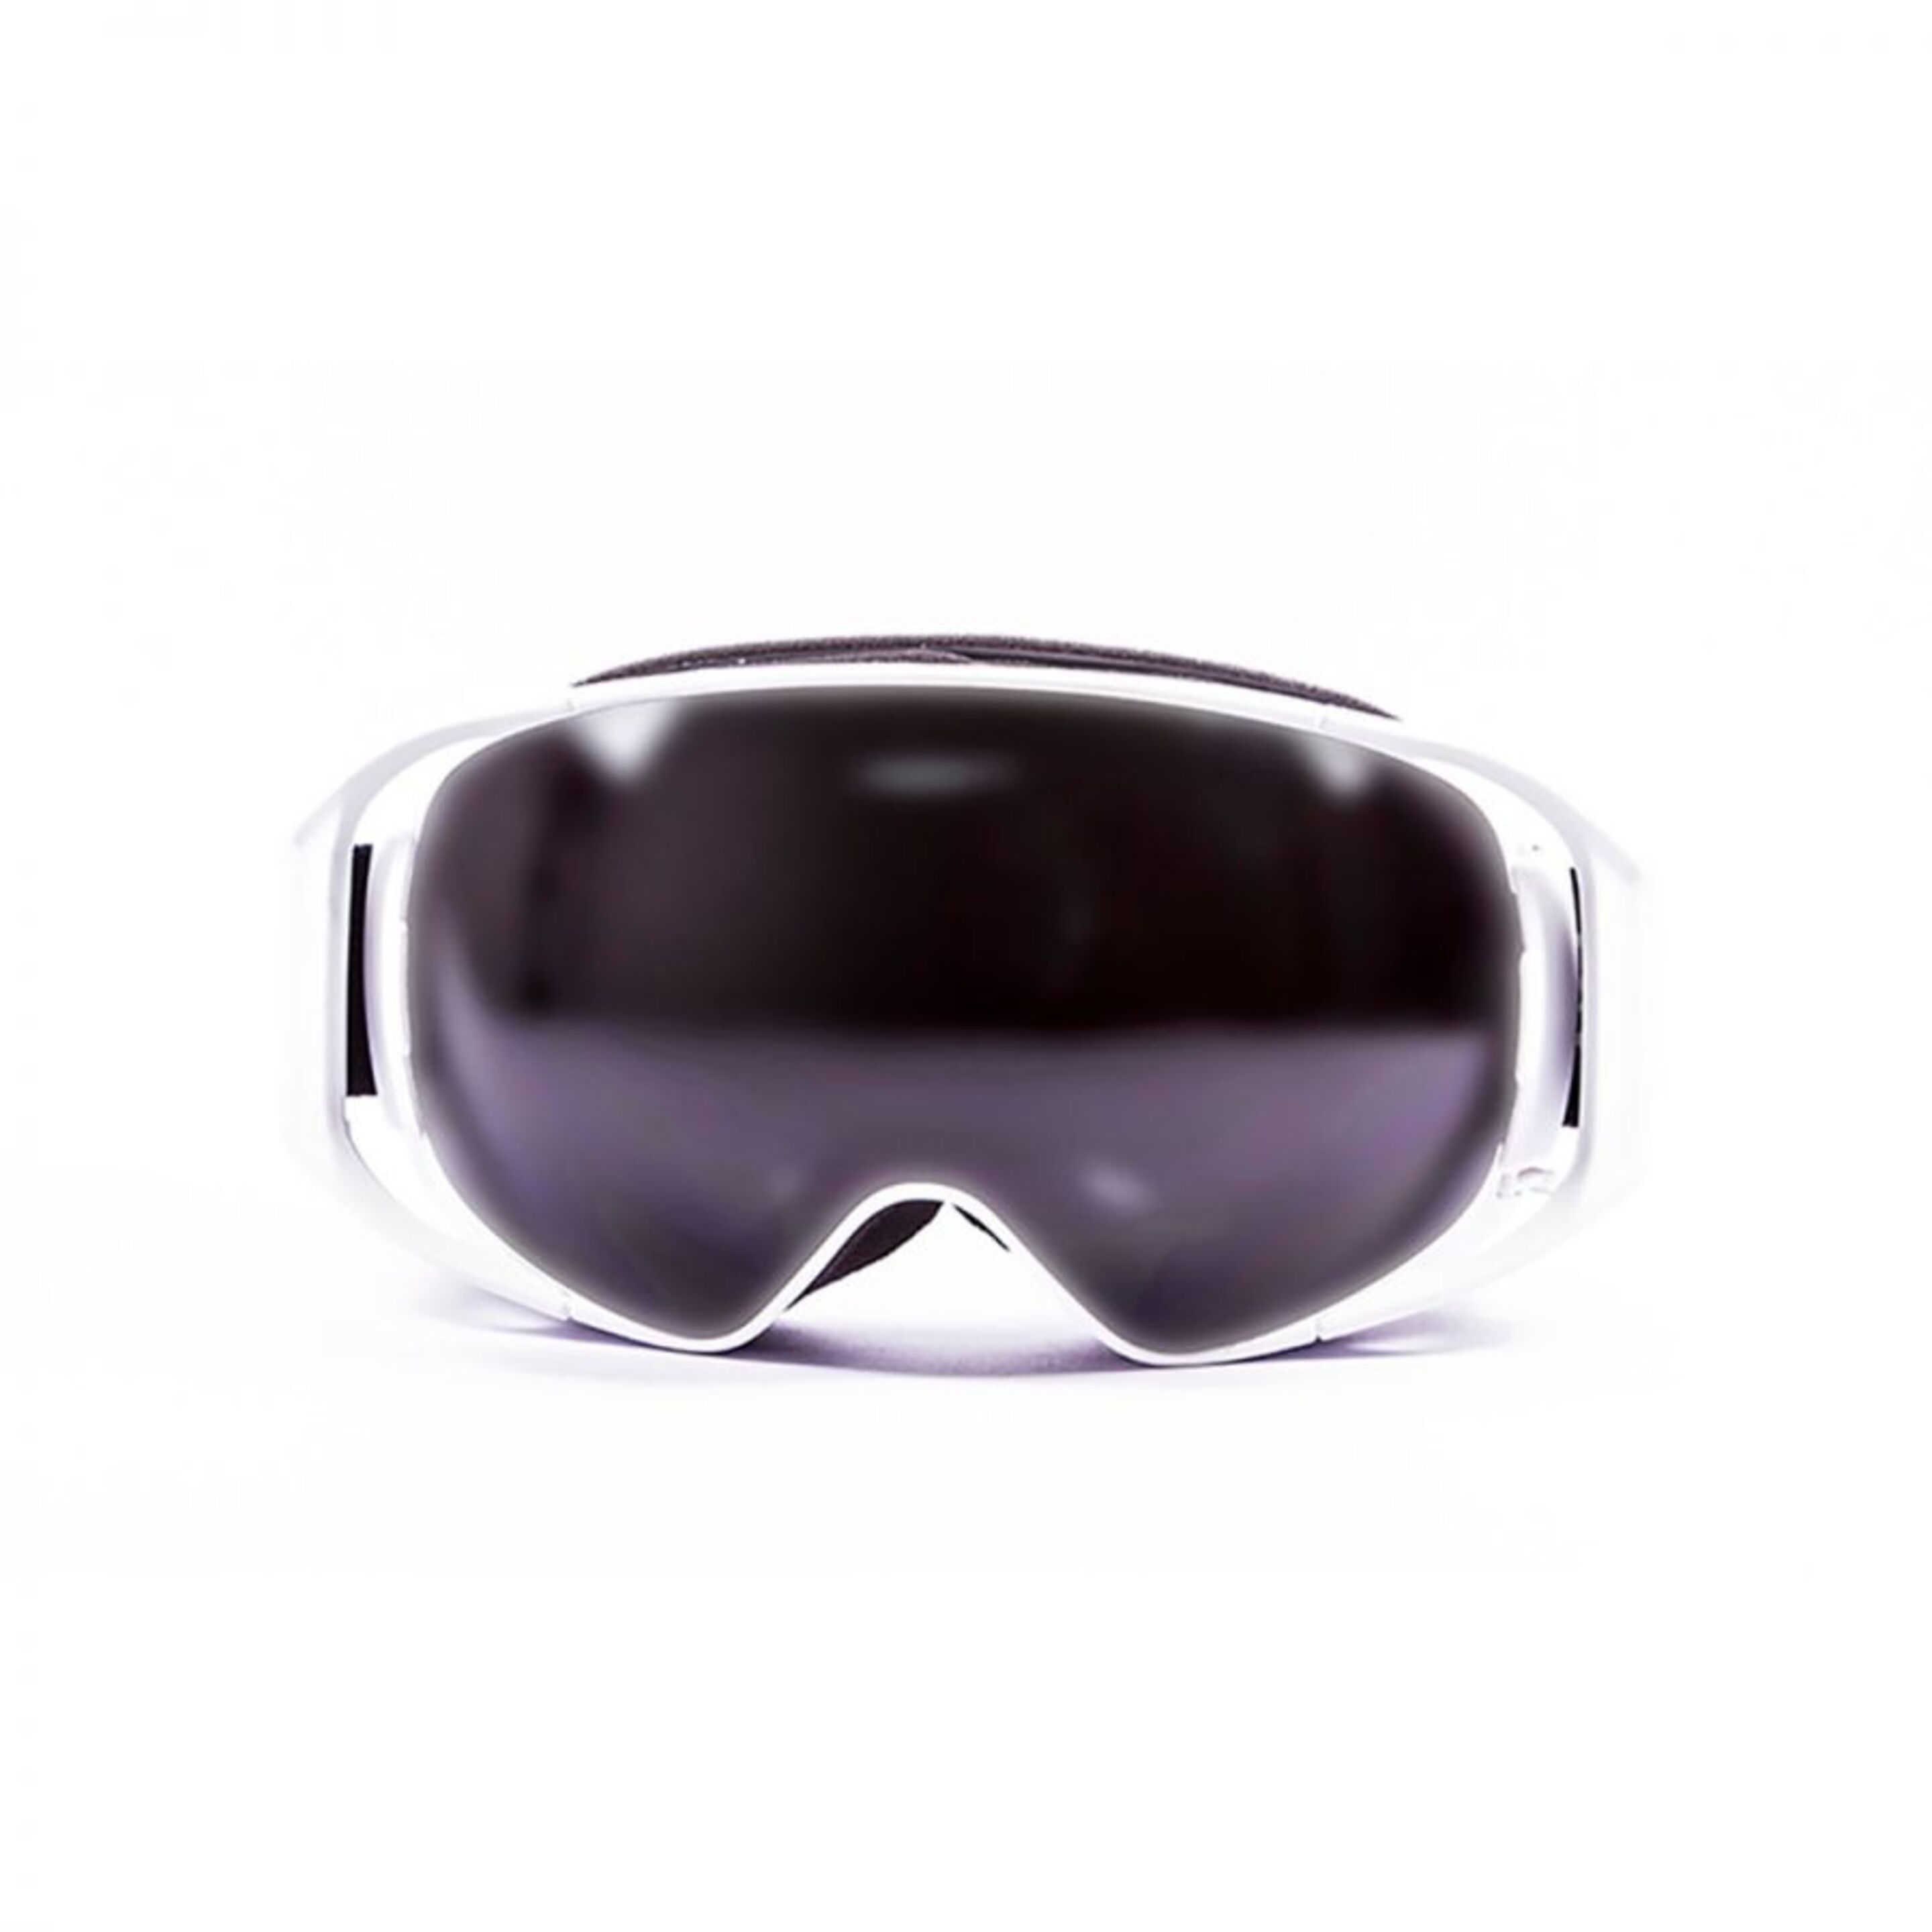 Mascara De Ski Ocean Sunglasses Snowbird - Blanco - Máscara De Ski Snowbird  MKP